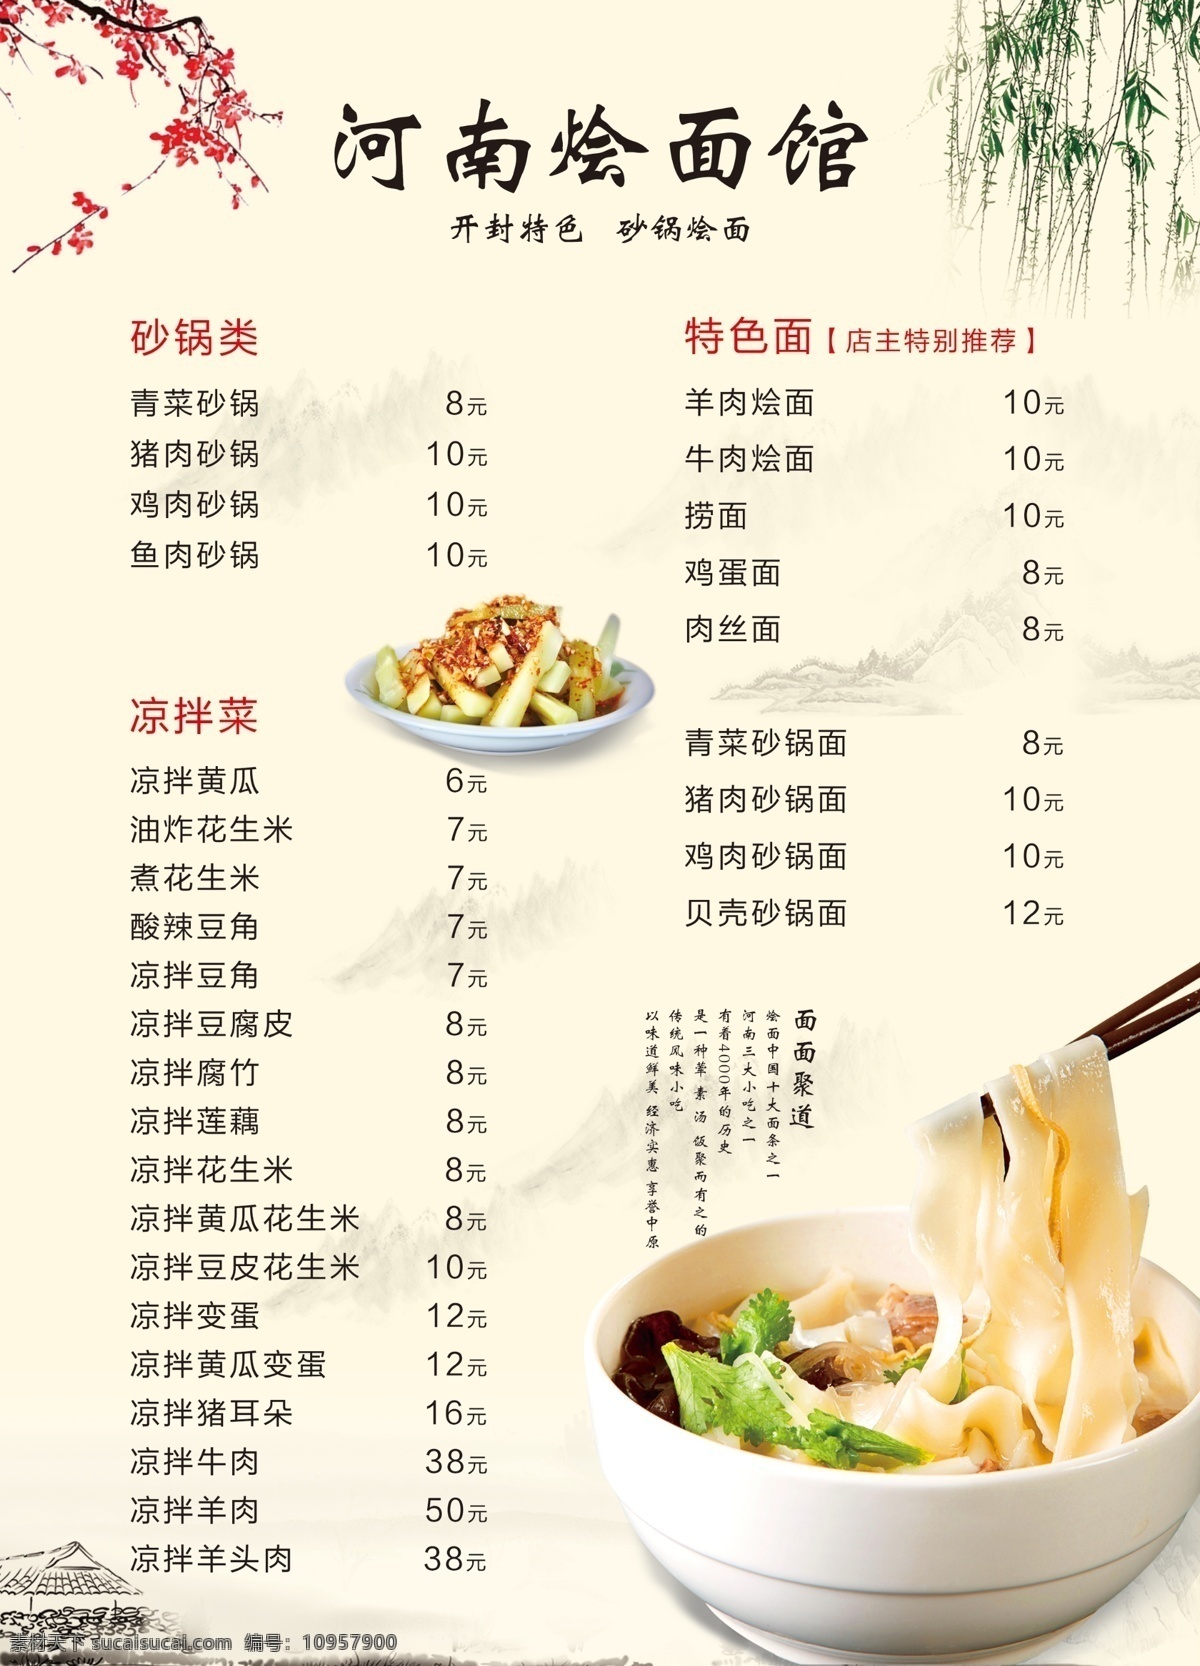 河南 烩 面馆 菜单 烩面 中国风 大排档 传单 菜单菜谱